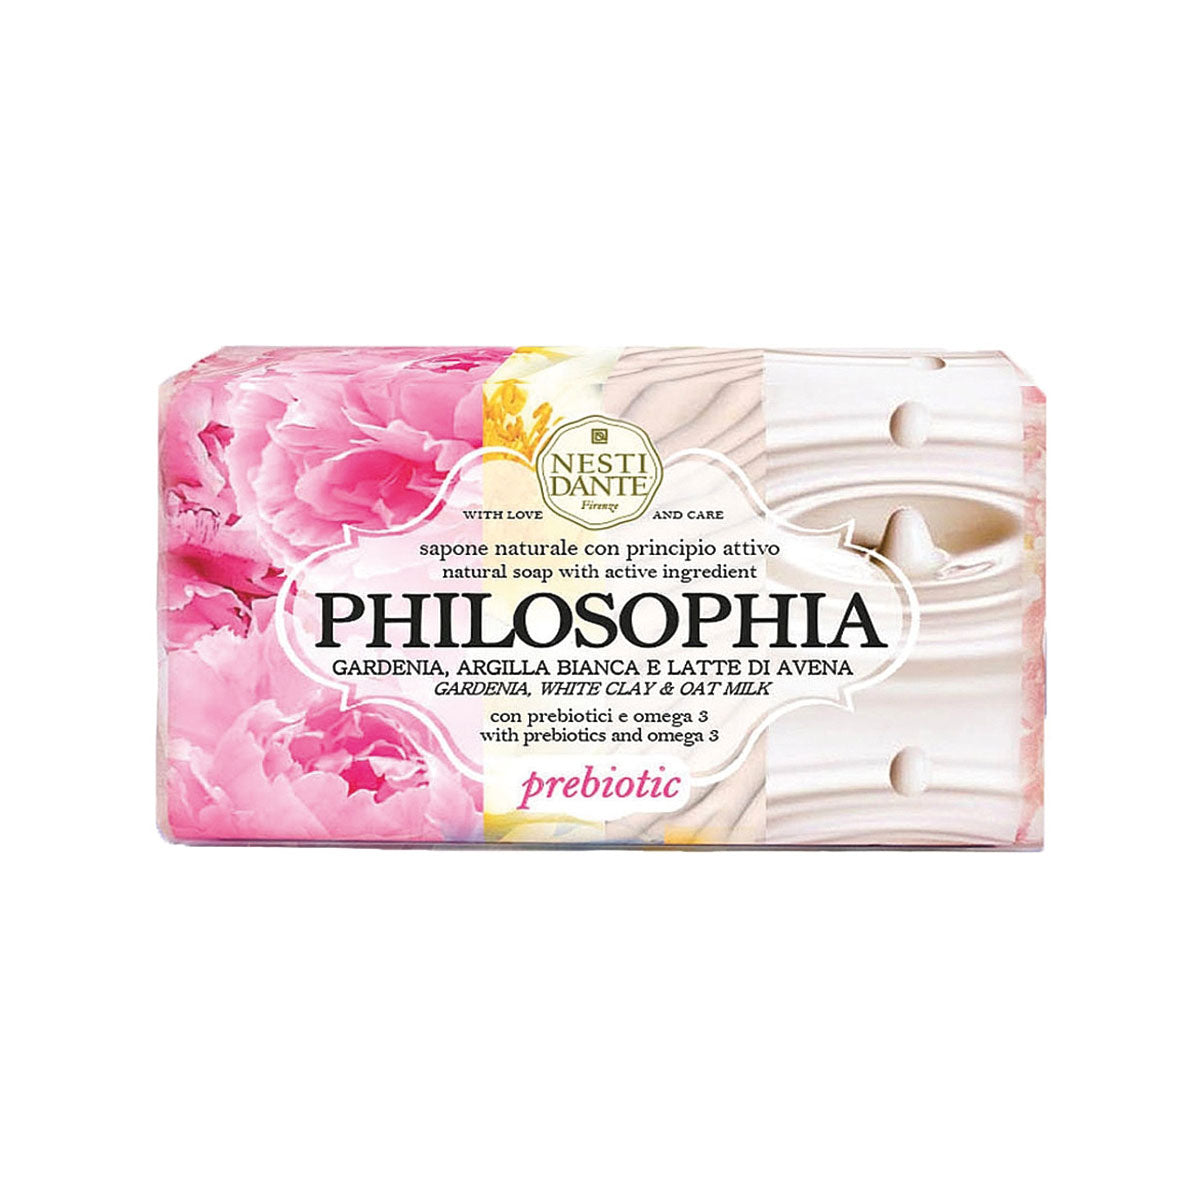 Nesti Dante - Philosophia Gardenia Prebiotic Soap